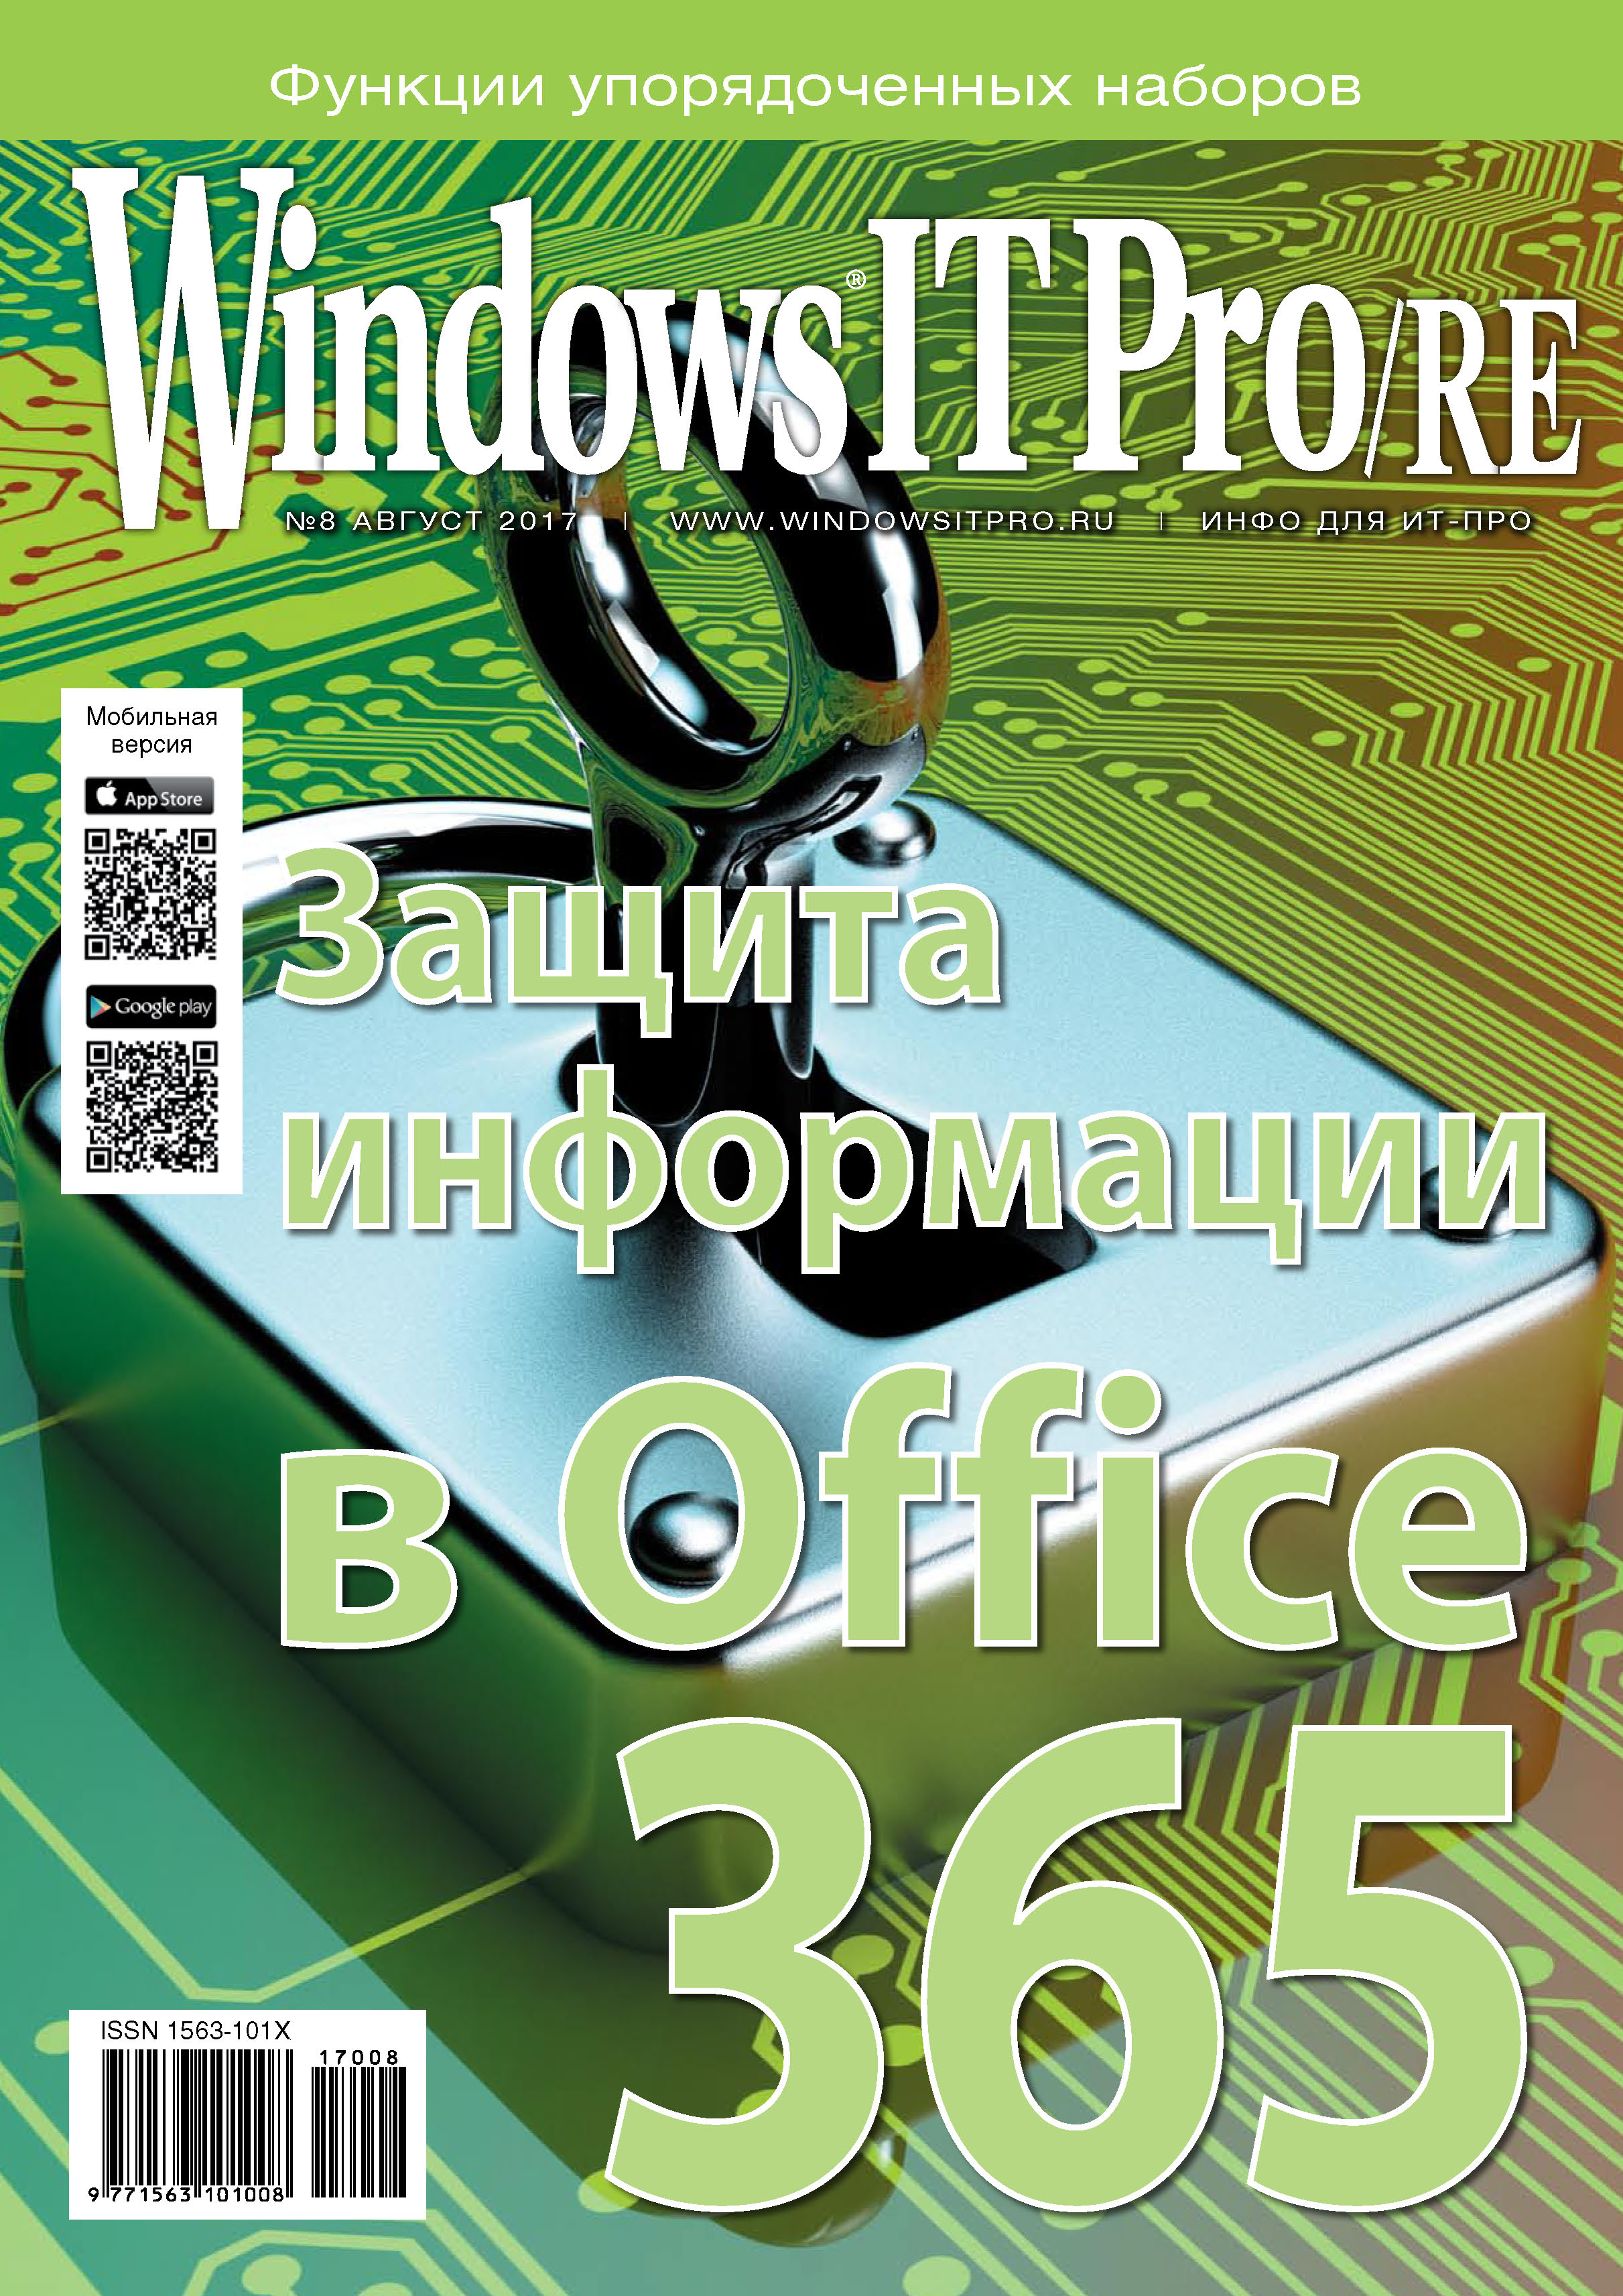 Книга Windows IT Pro 2017 Windows IT Pro/RE №08/2017 созданная Открытые системы может относится к жанру компьютерные журналы, ОС и сети, программы. Стоимость электронной книги Windows IT Pro/RE №08/2017 с идентификатором 25205115 составляет 484.00 руб.